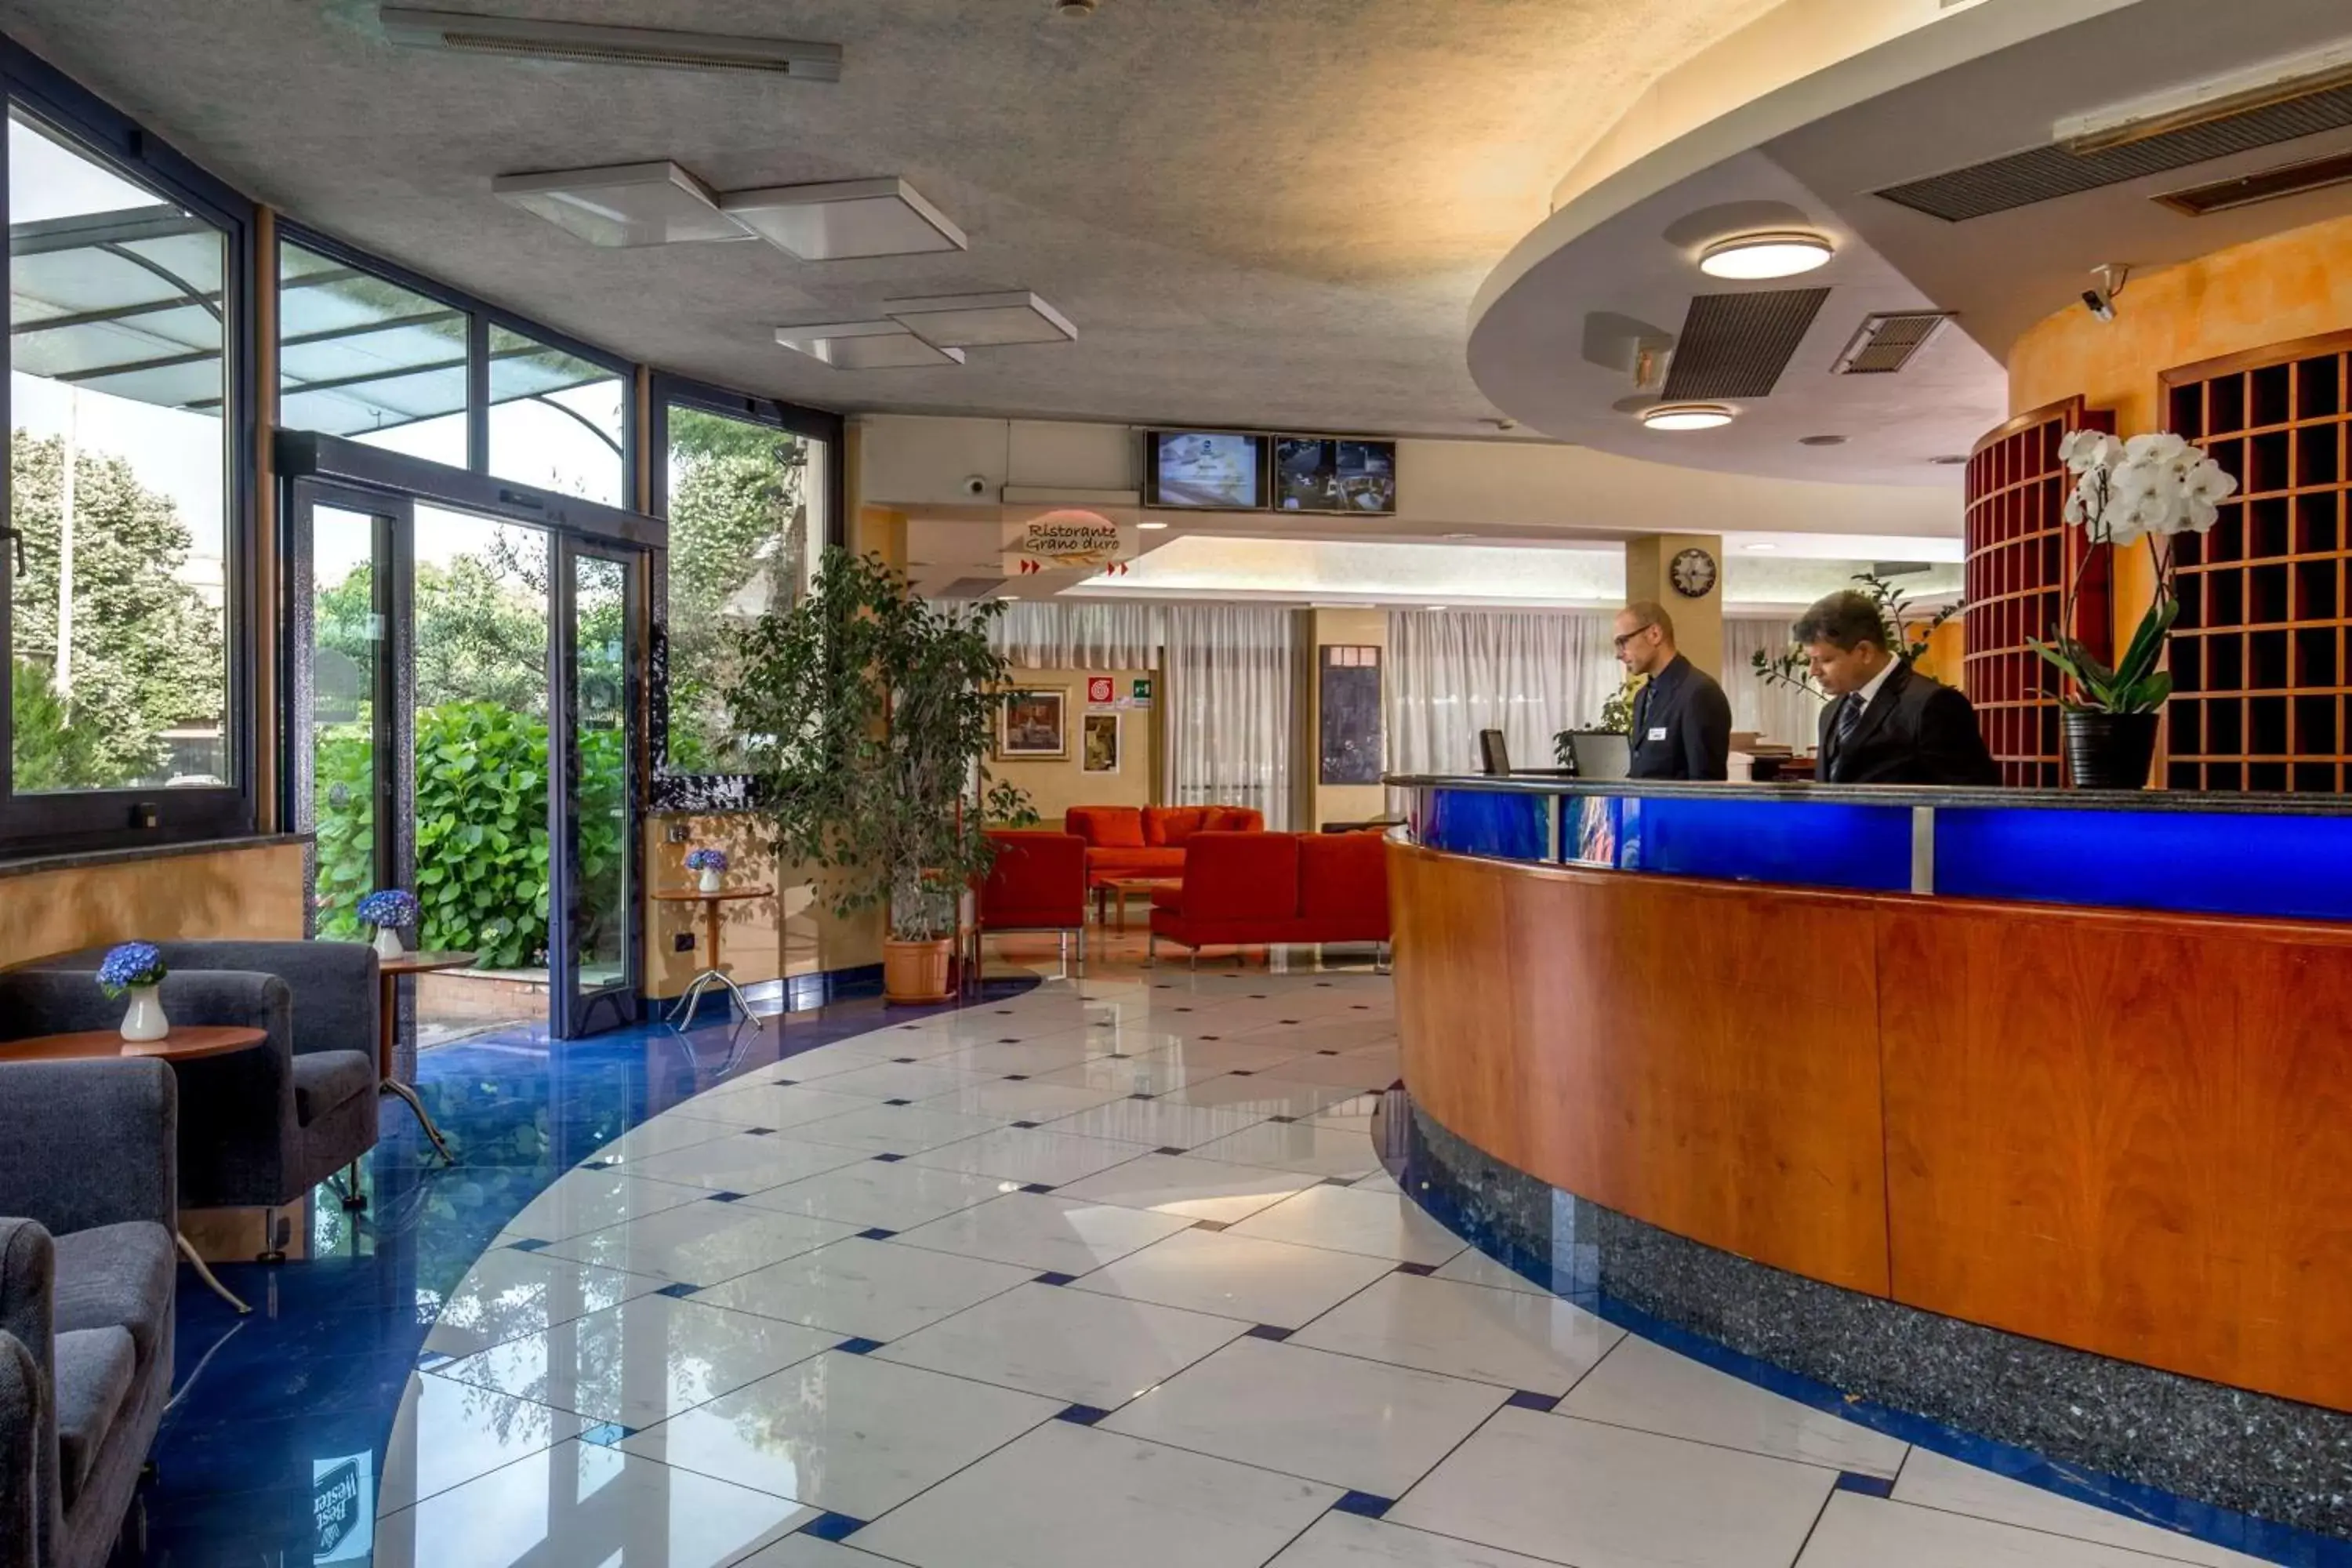 Lobby or reception, Lobby/Reception in Best Western Blu Hotel Roma